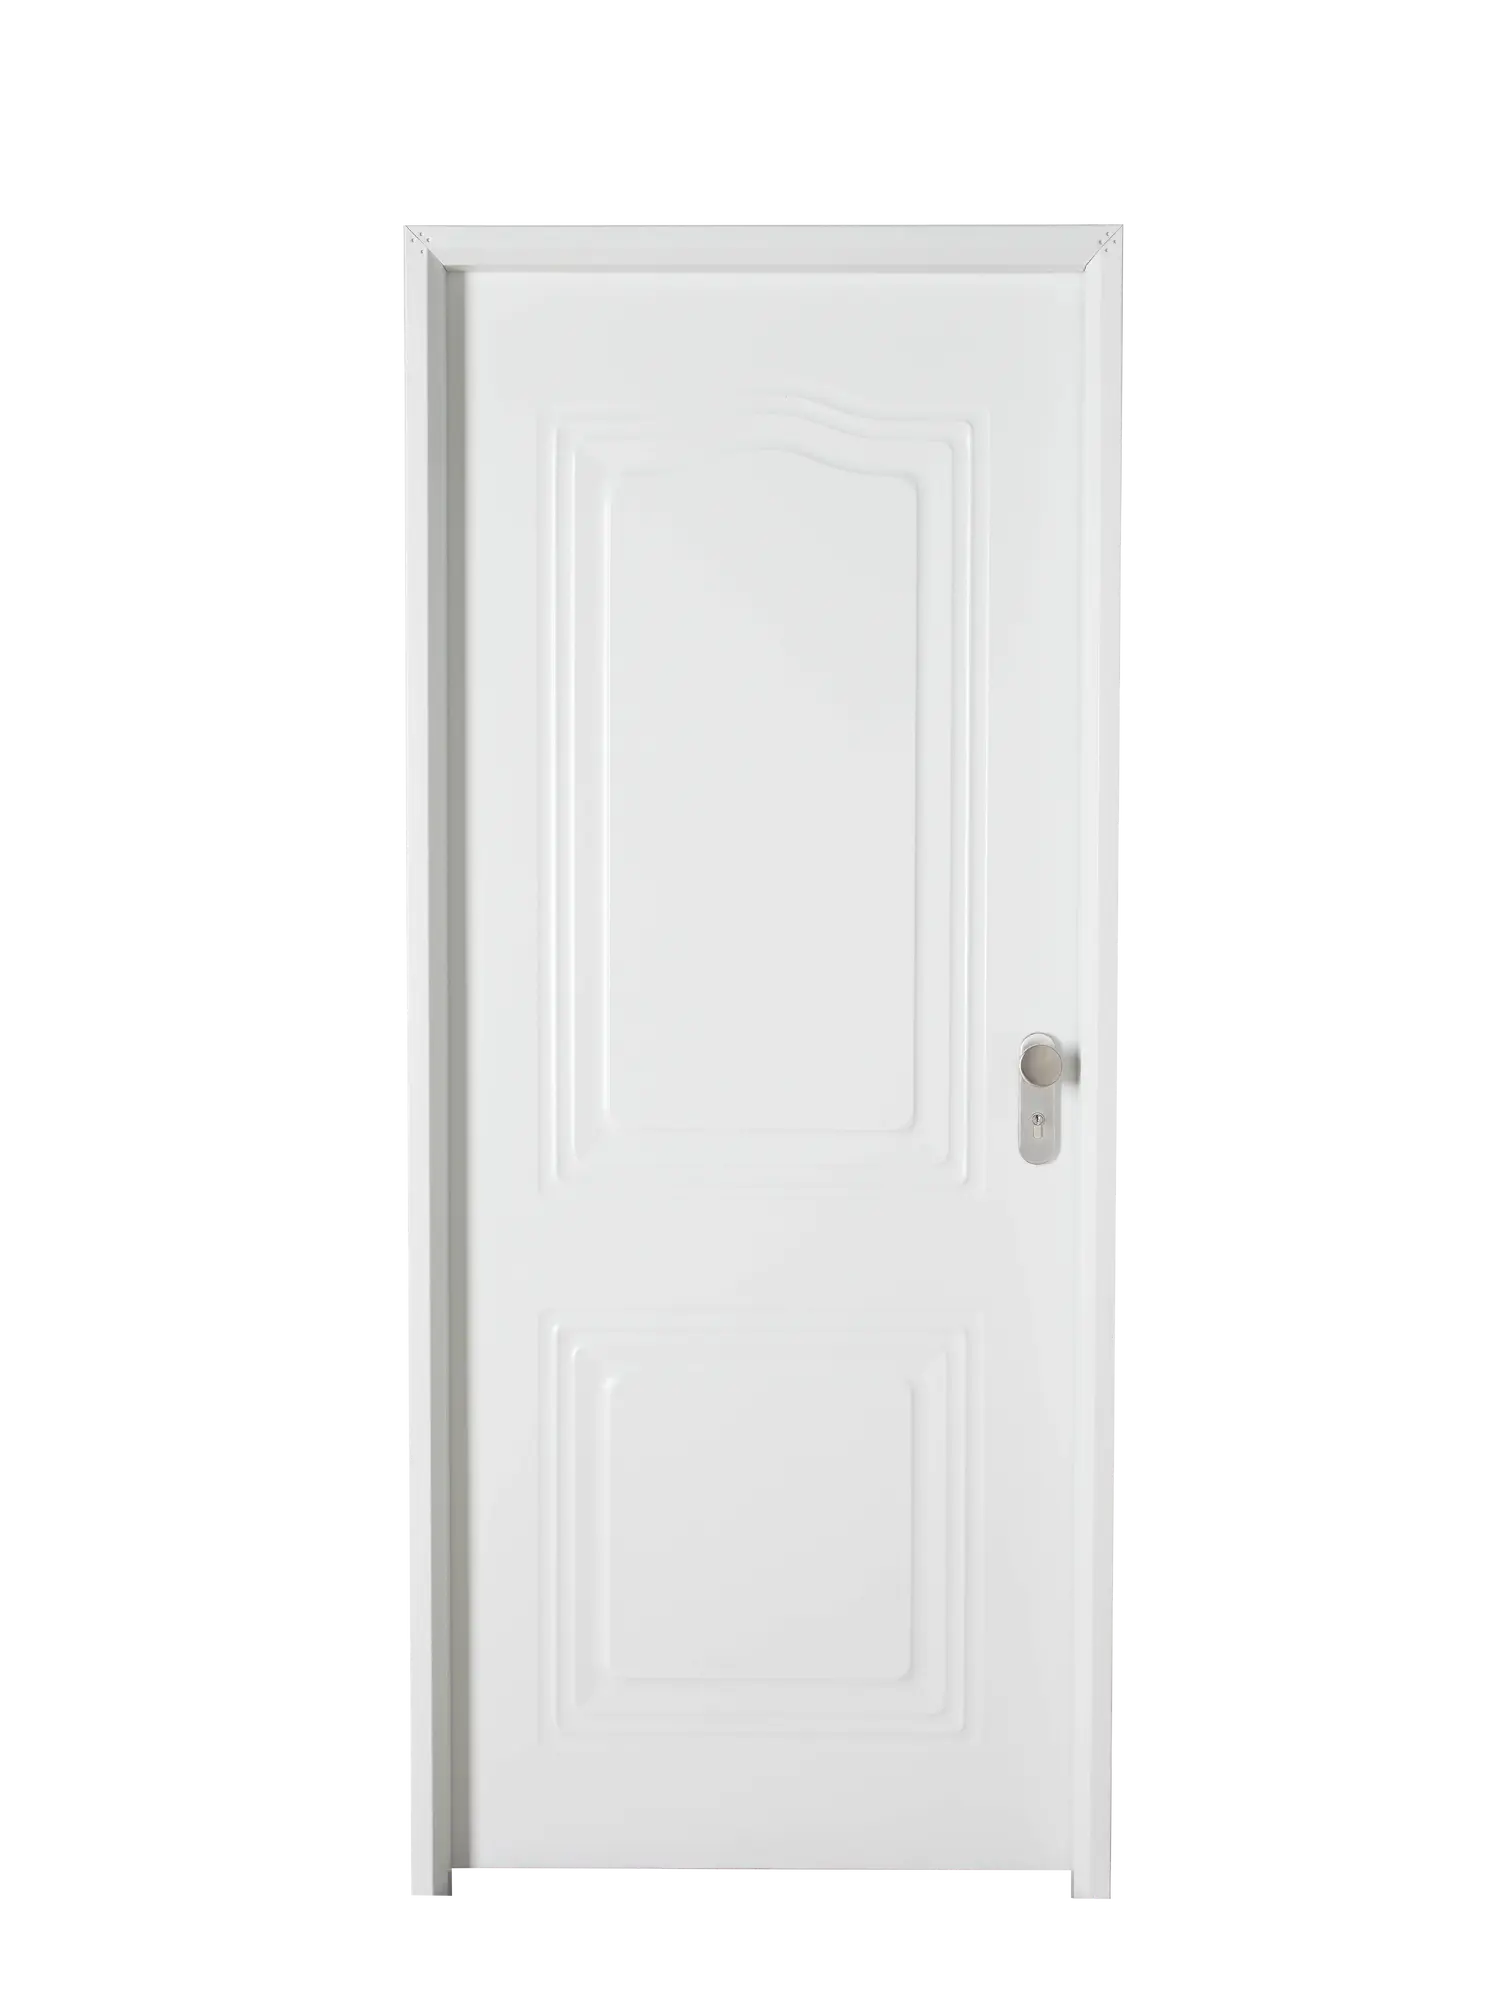 Puerta de entrada metálica semiprovenzal eco blanco izquierda de 89x210 cm